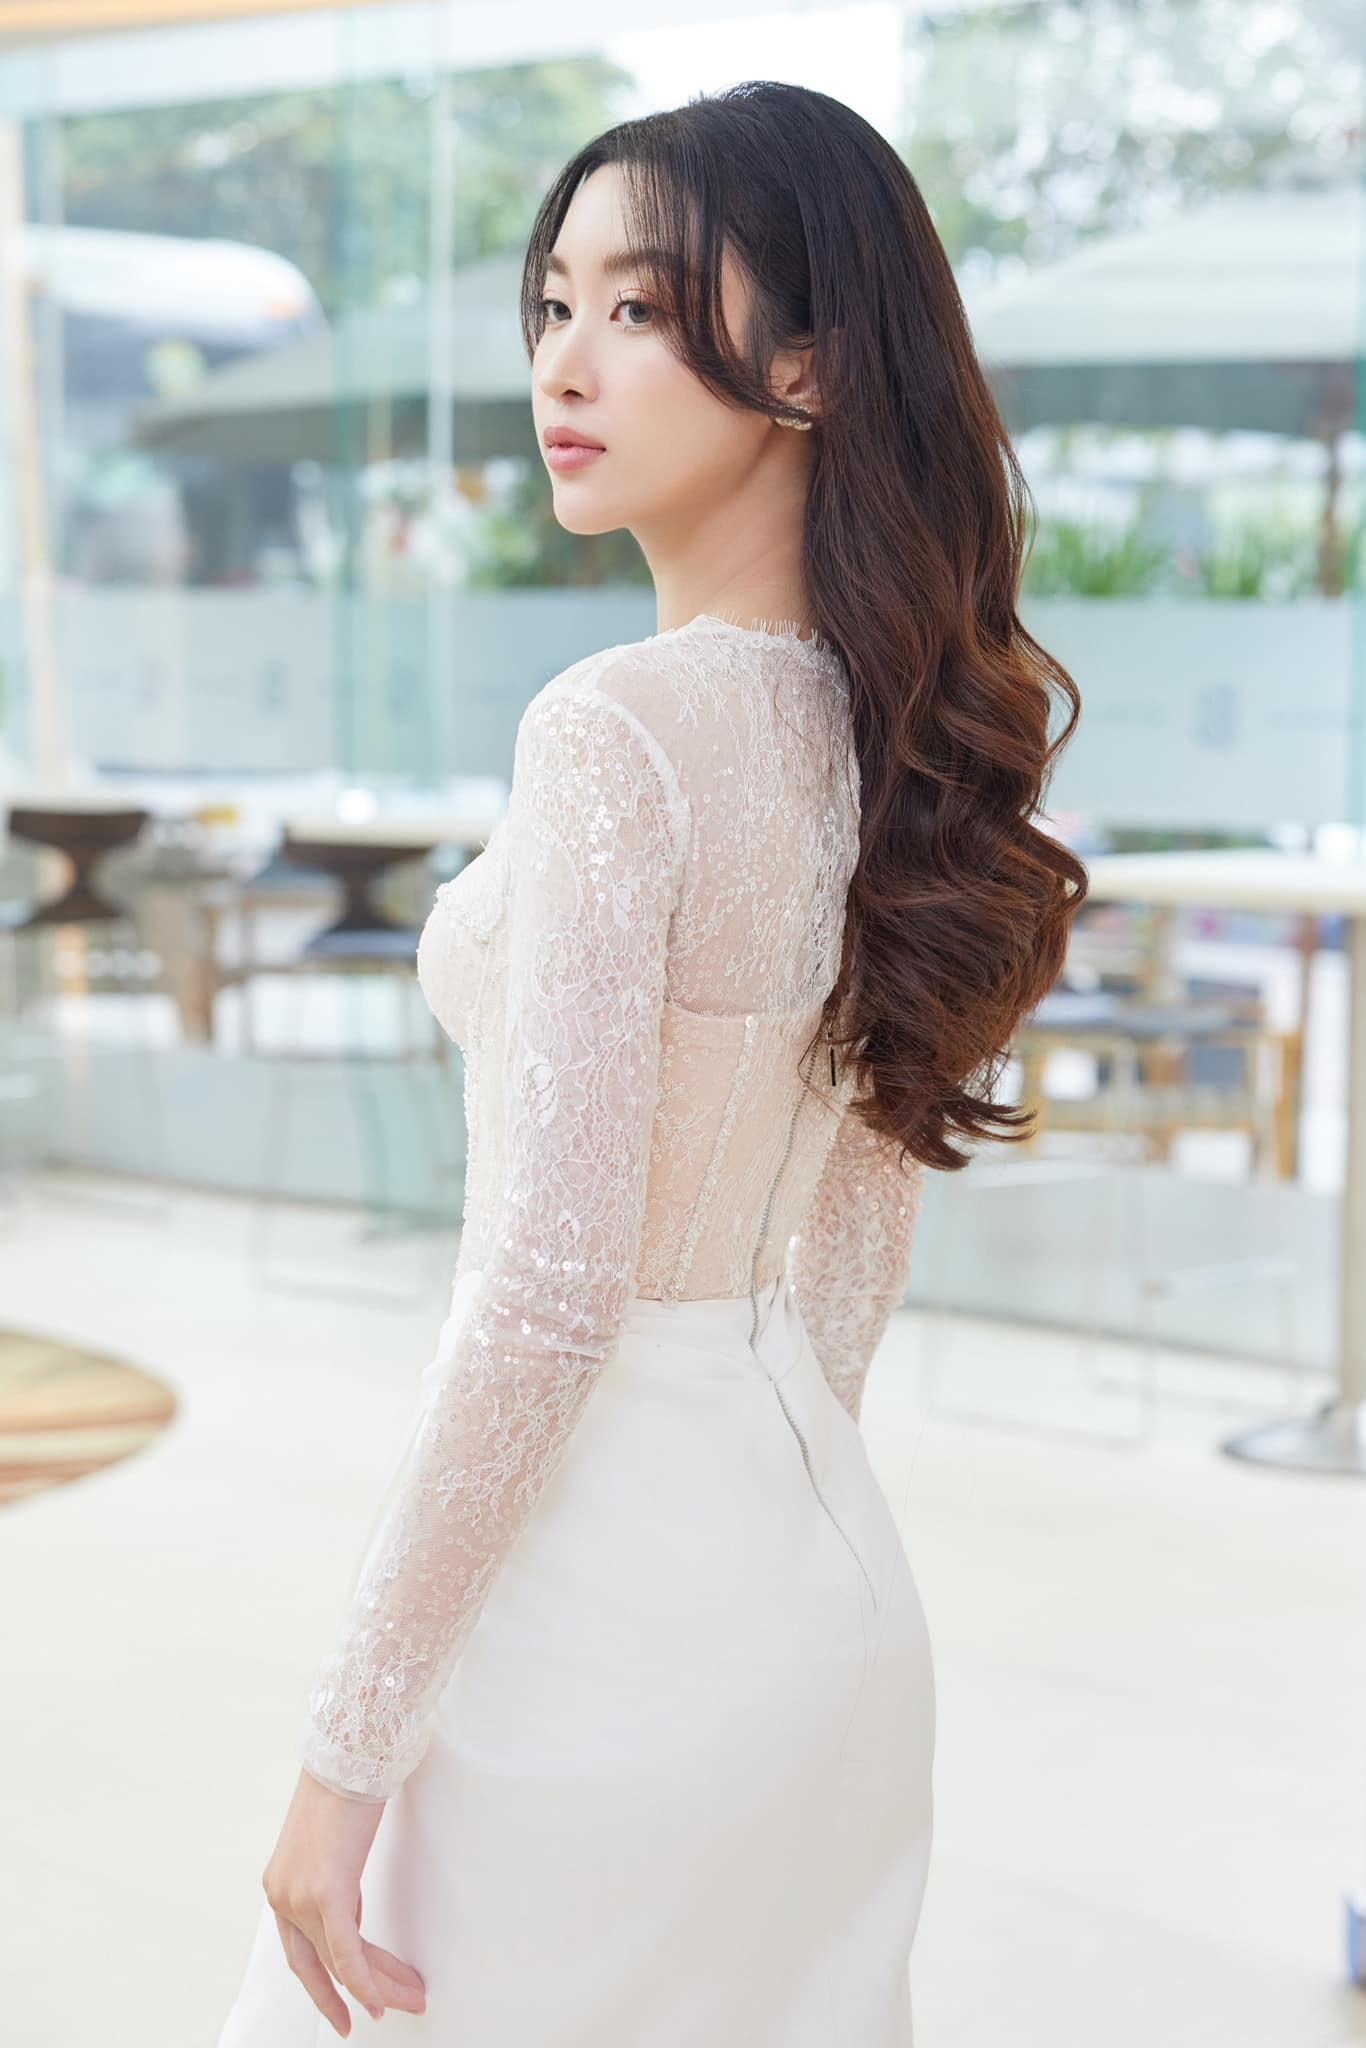 Hoa hậu Đỗ Mỹ Linh công khai tiêm thẩm mỹ, khoe cận gương mặt gây chú ý- Ảnh 4.